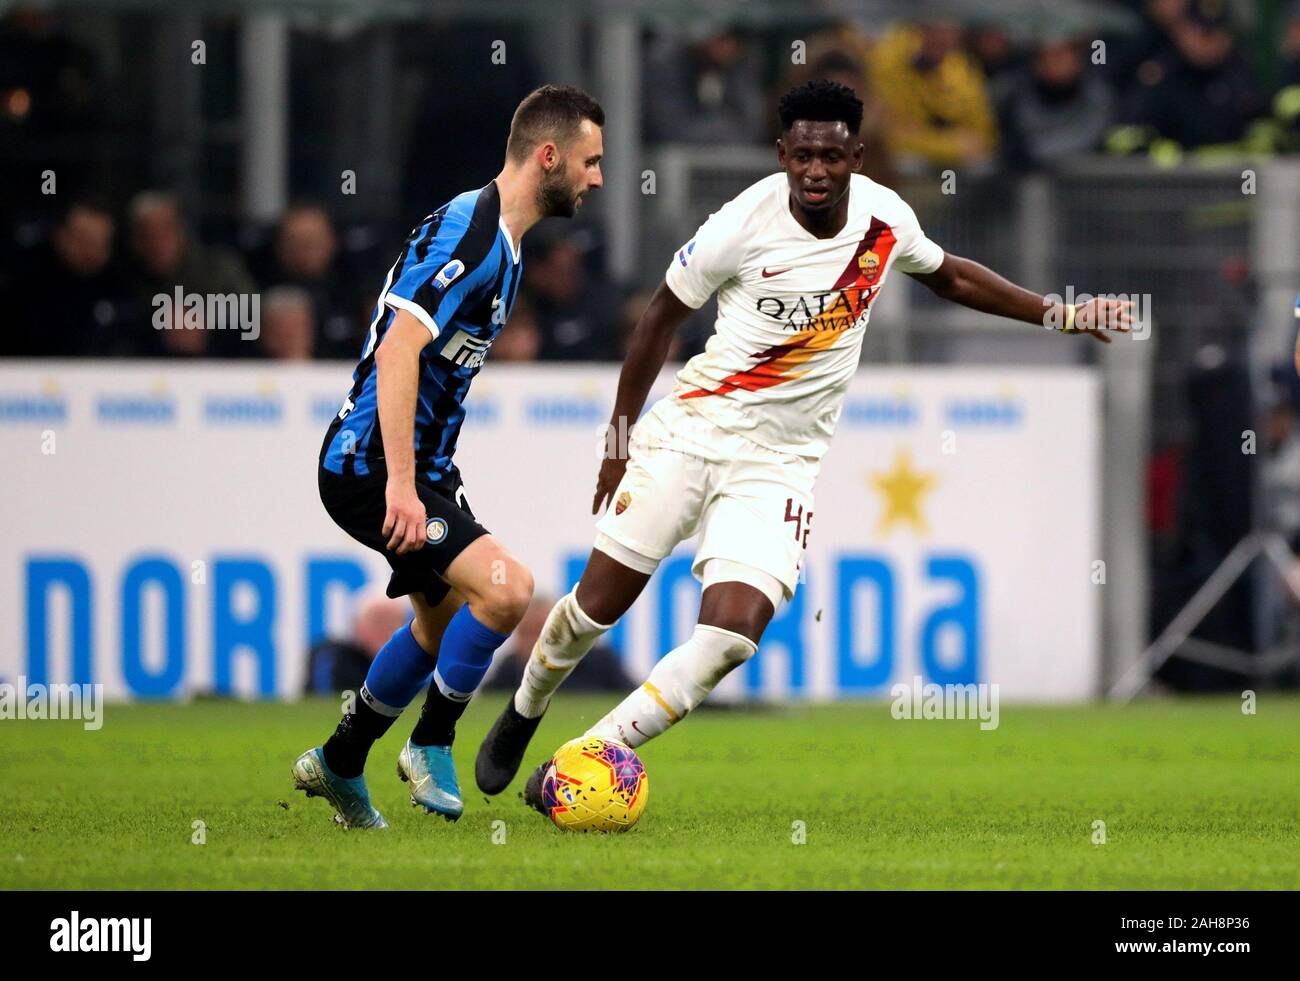 Milan, ITALIE - décembre 06, 2019: Marcelo Brozovic et Amadou Diawara en action pendant la série A 2019/2020 INTER / ROMA au stade San Siro. Banque D'Images